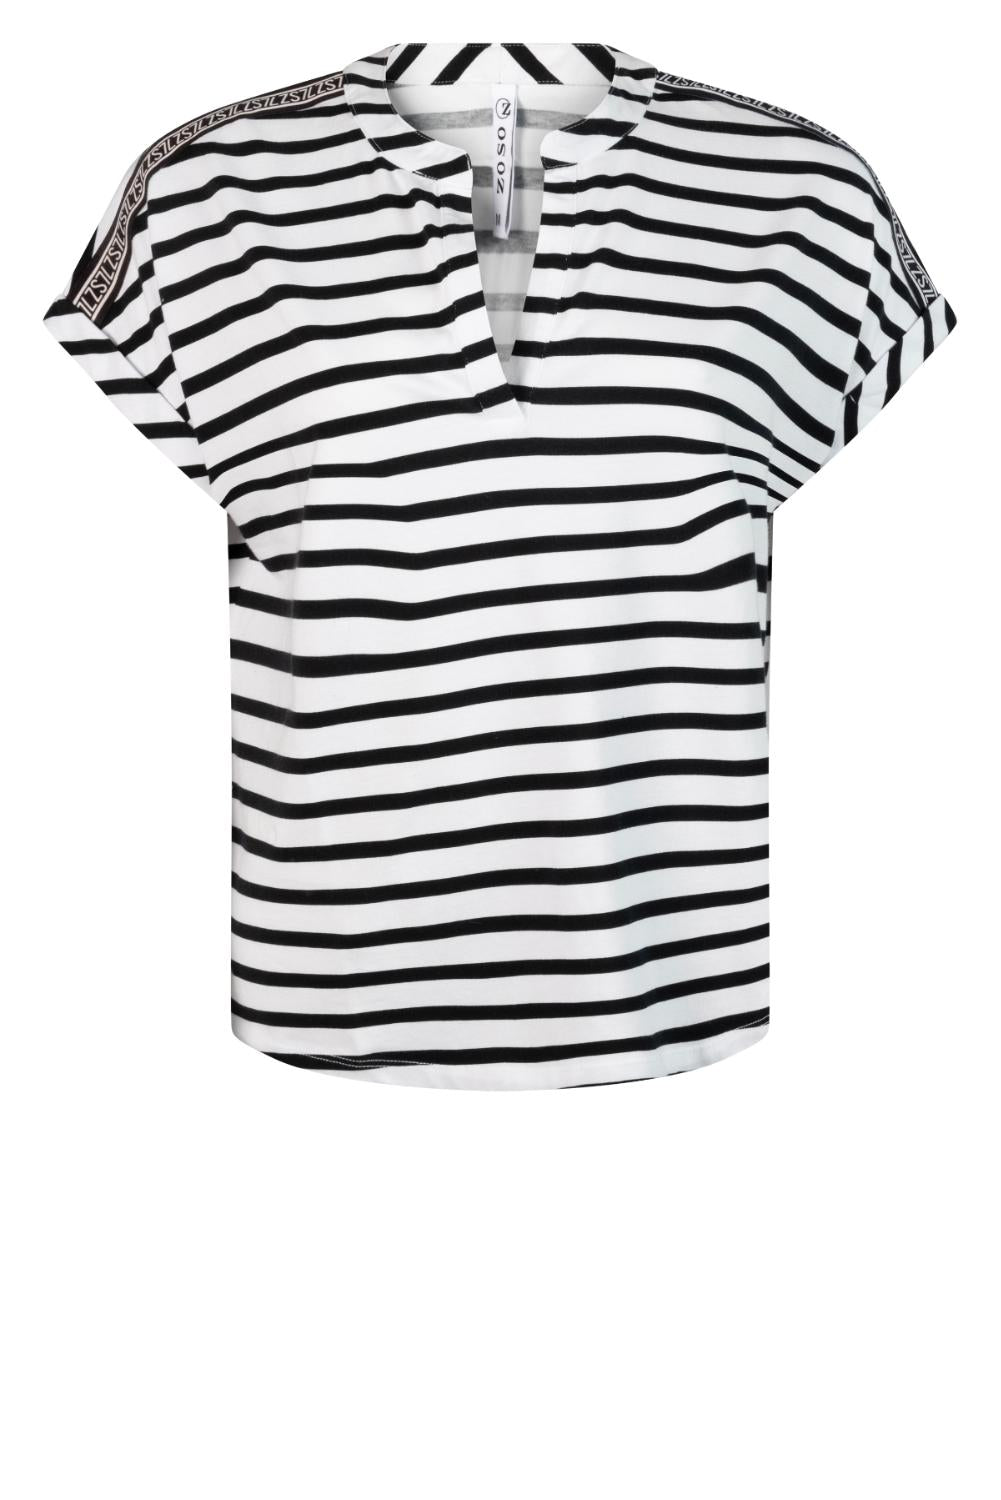 Striped T shirt 242Margot